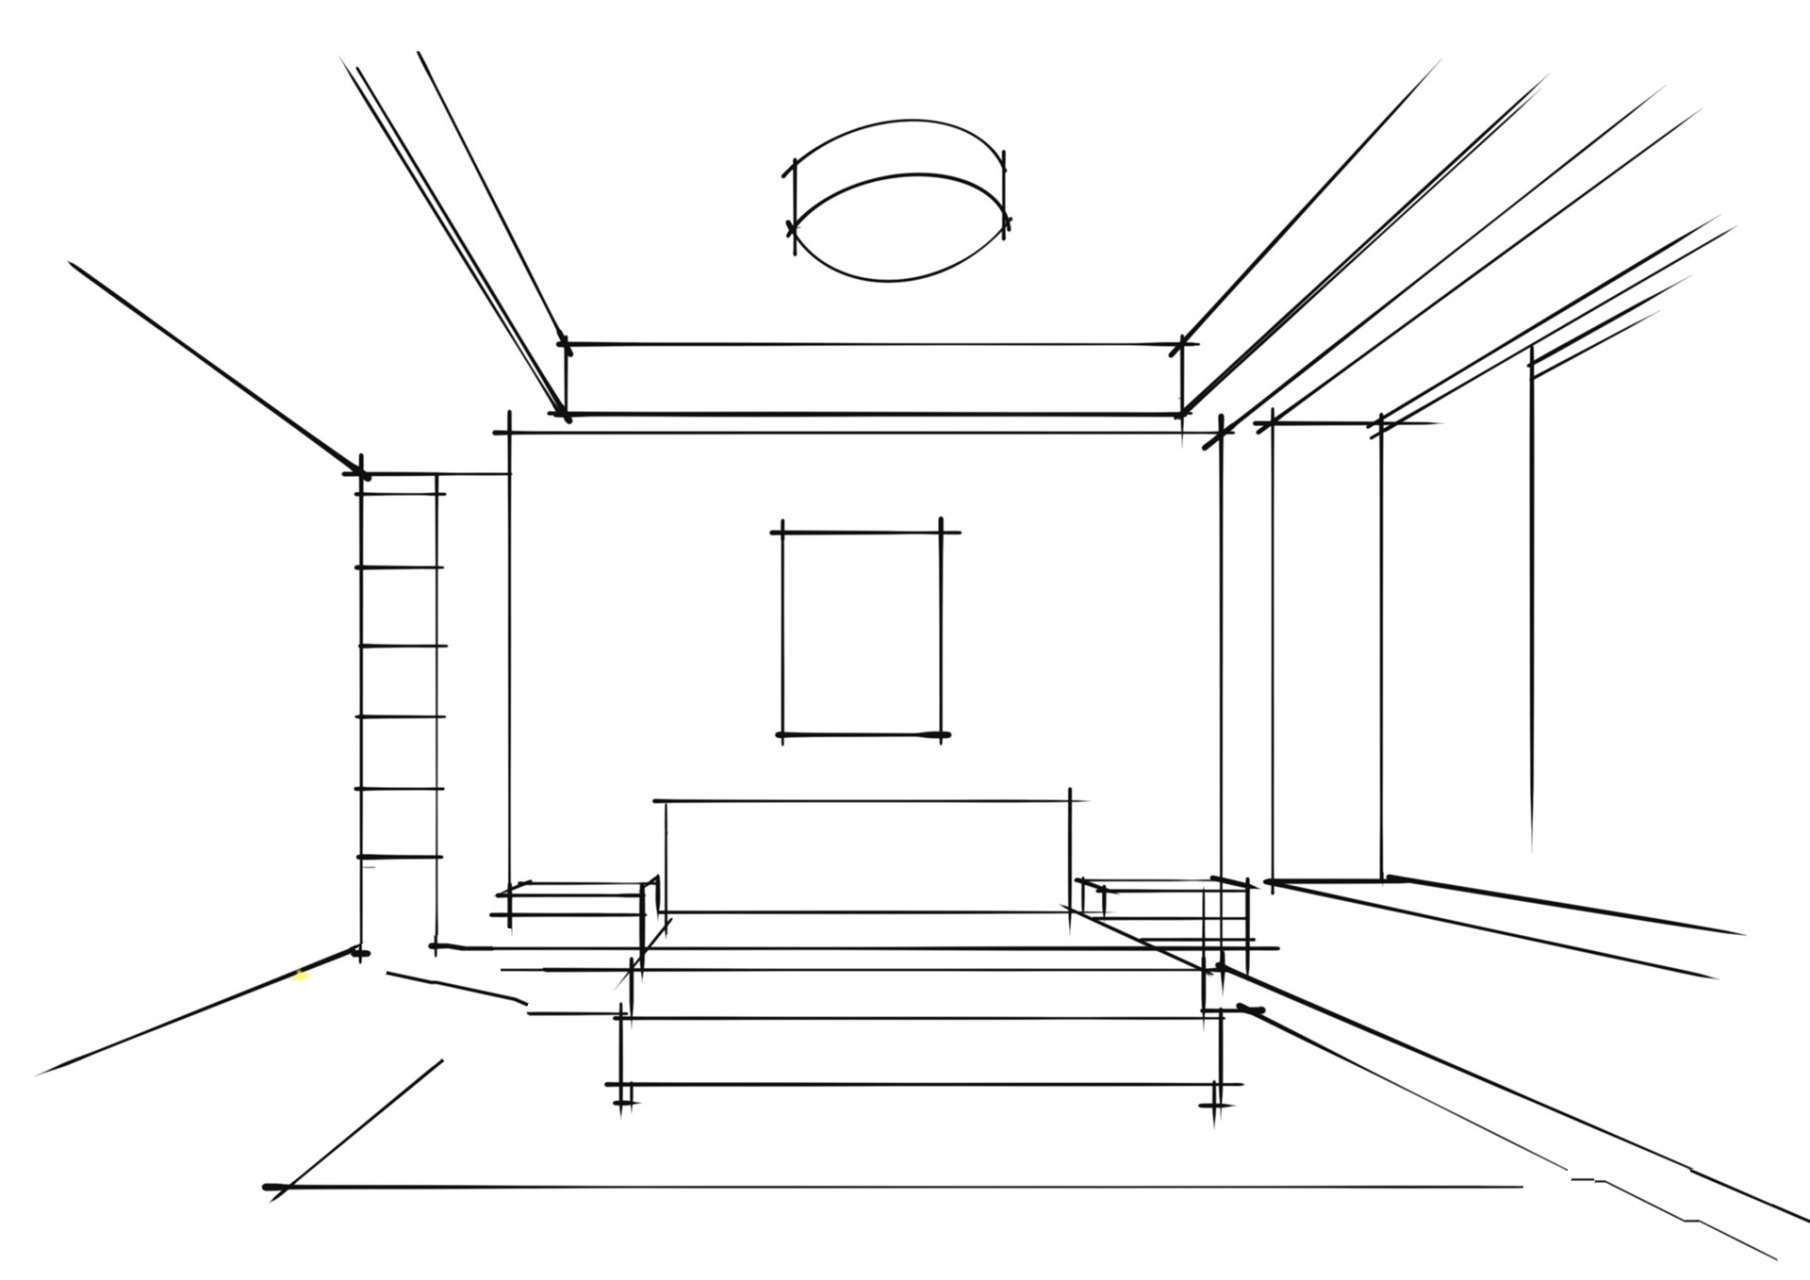 卧室空间怎么画 透视:一点透视 风格:现代风格 在绘画之前要先找到